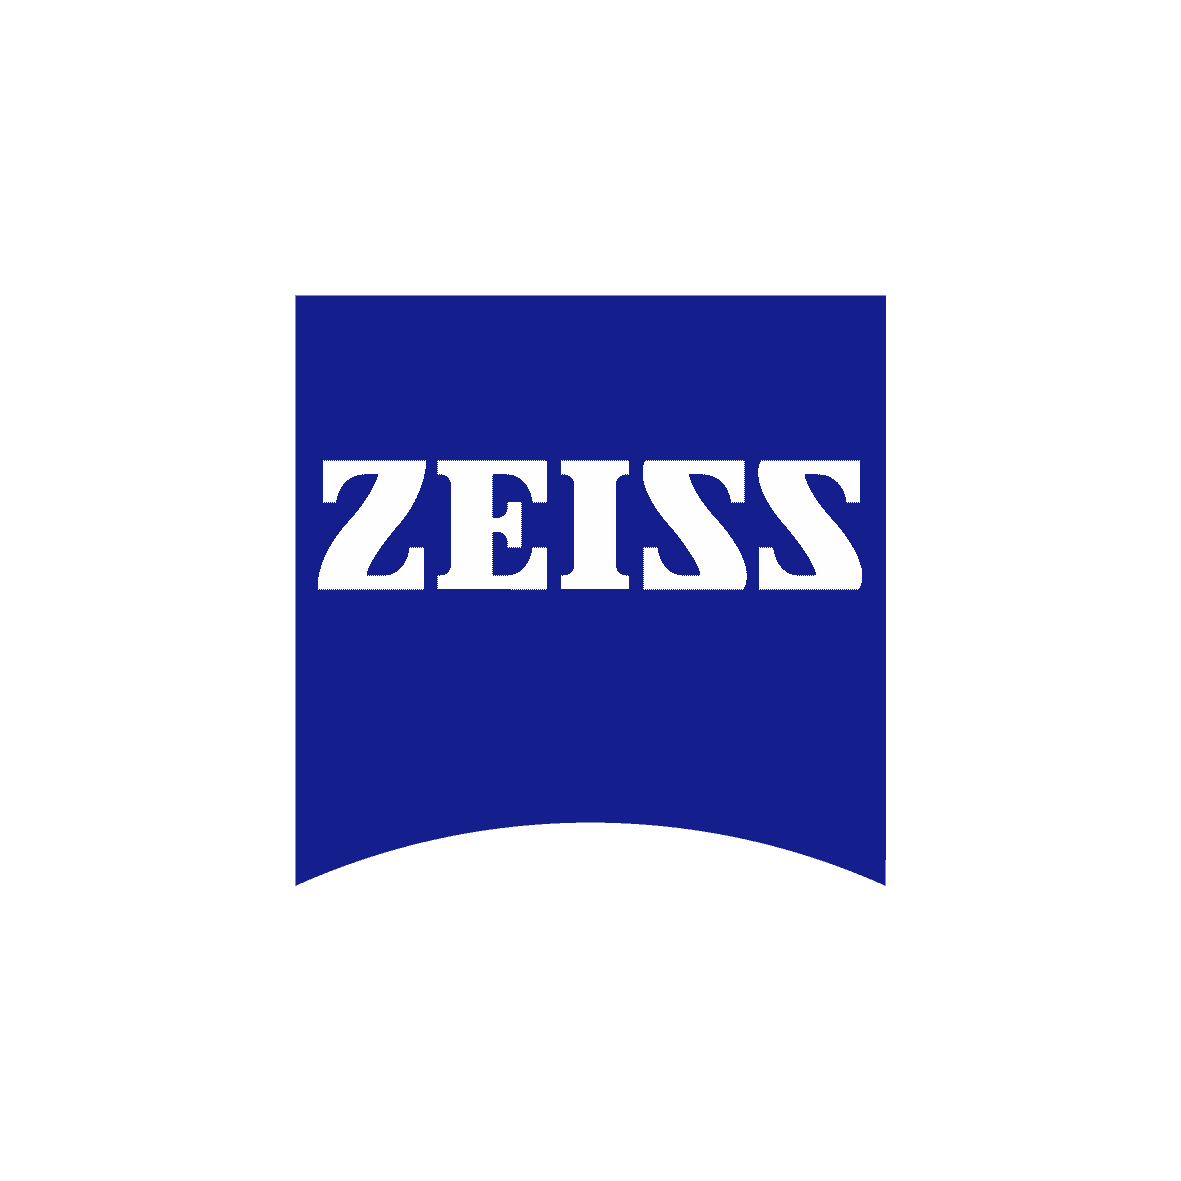 zeiss-logo-rgb